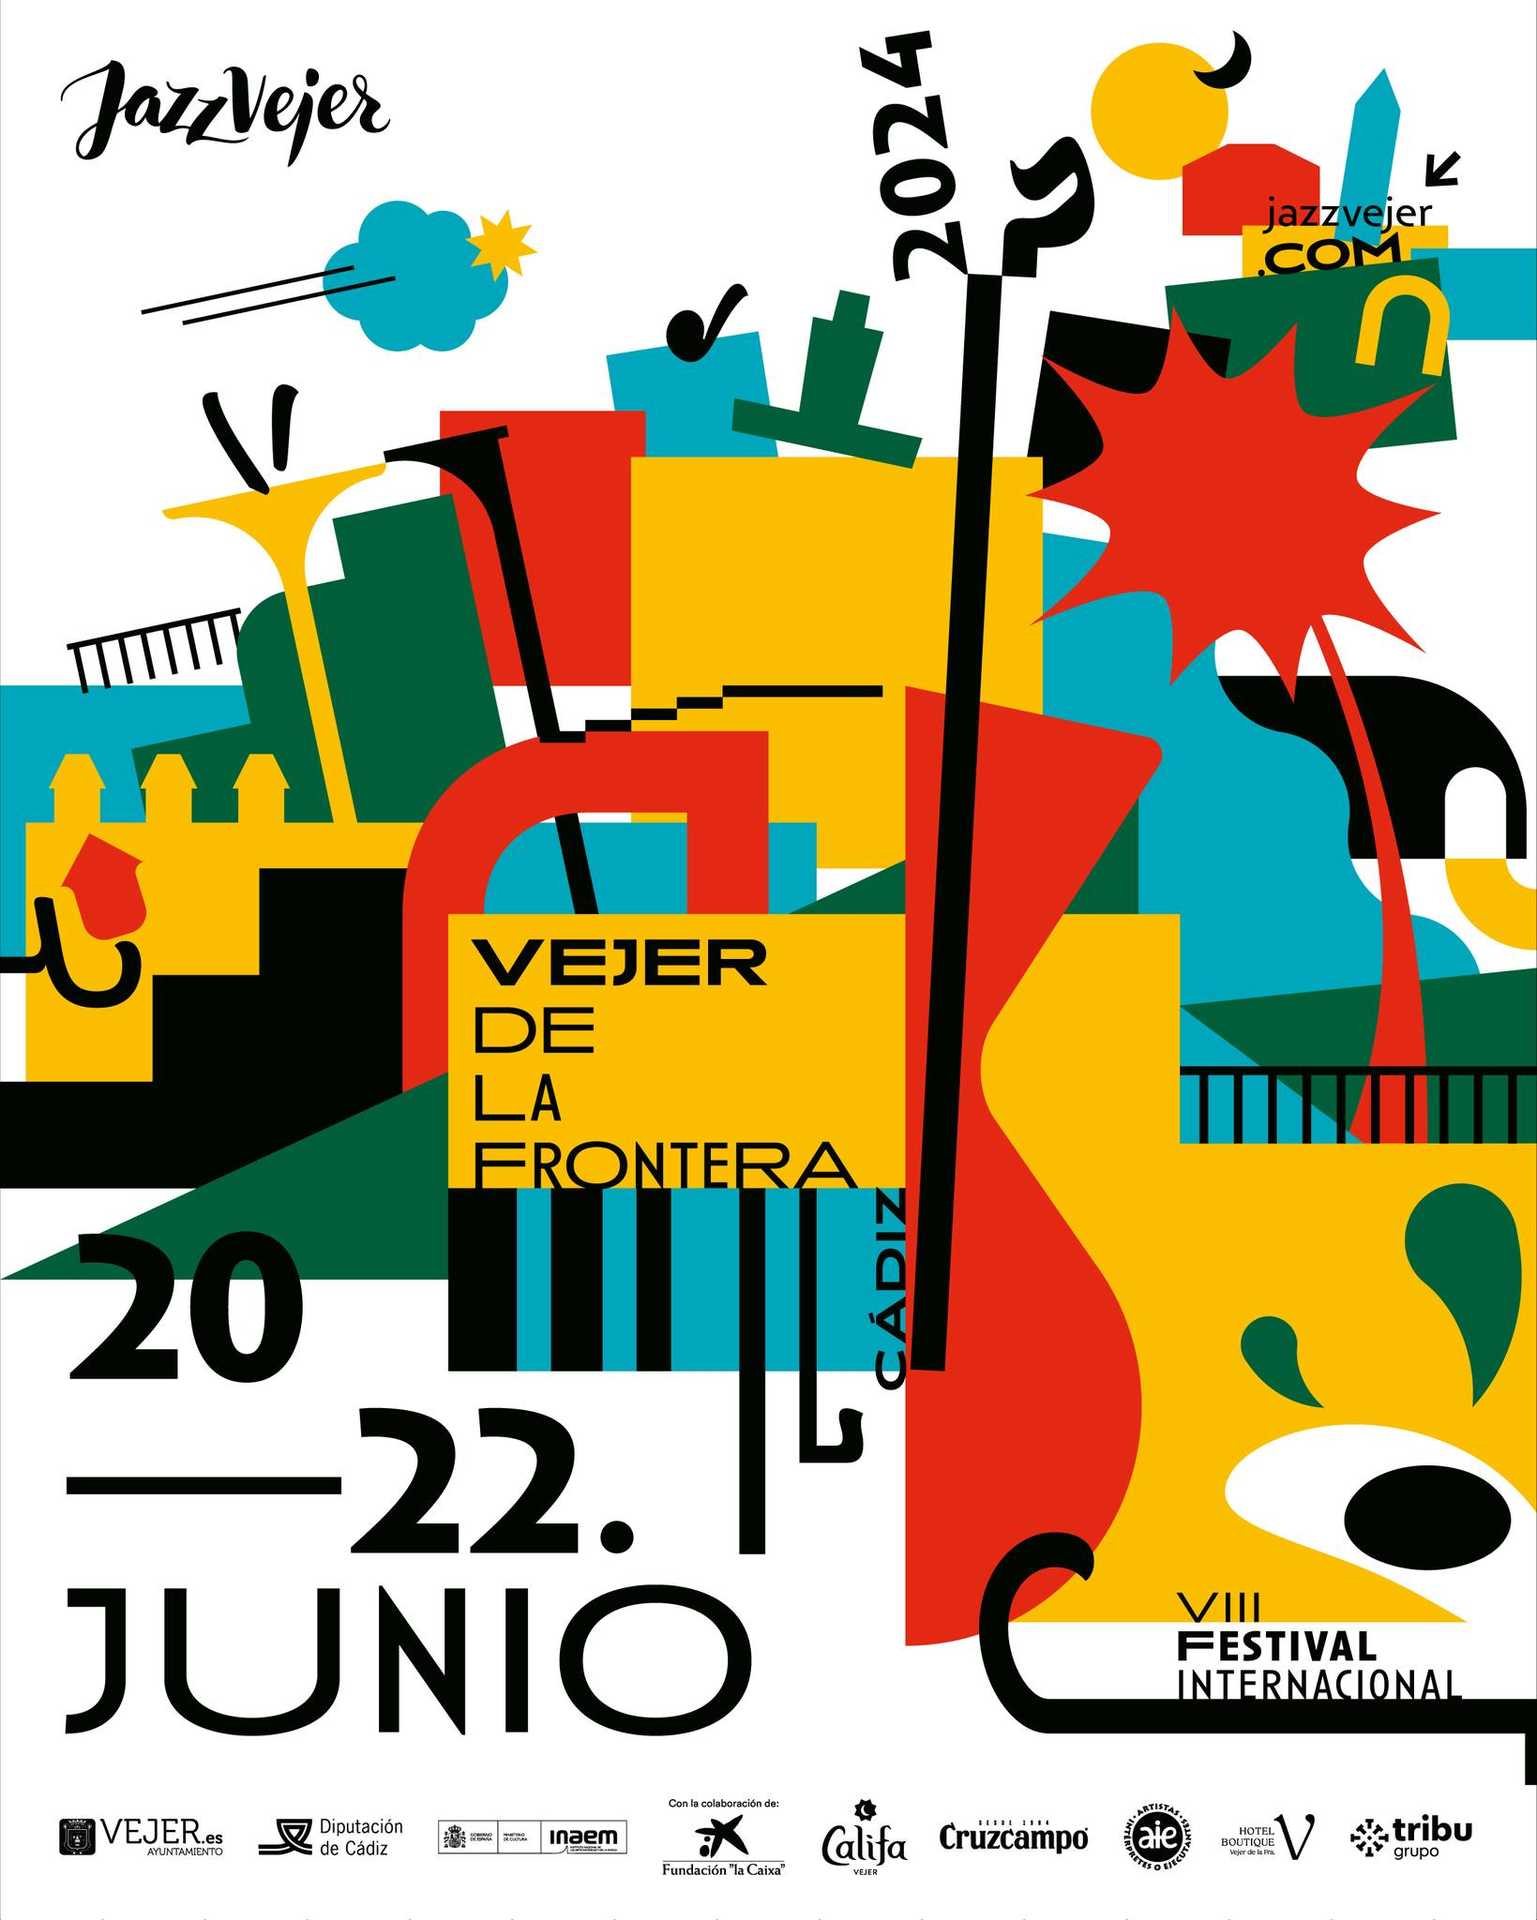 Internationales Jazzfestival von Vejer